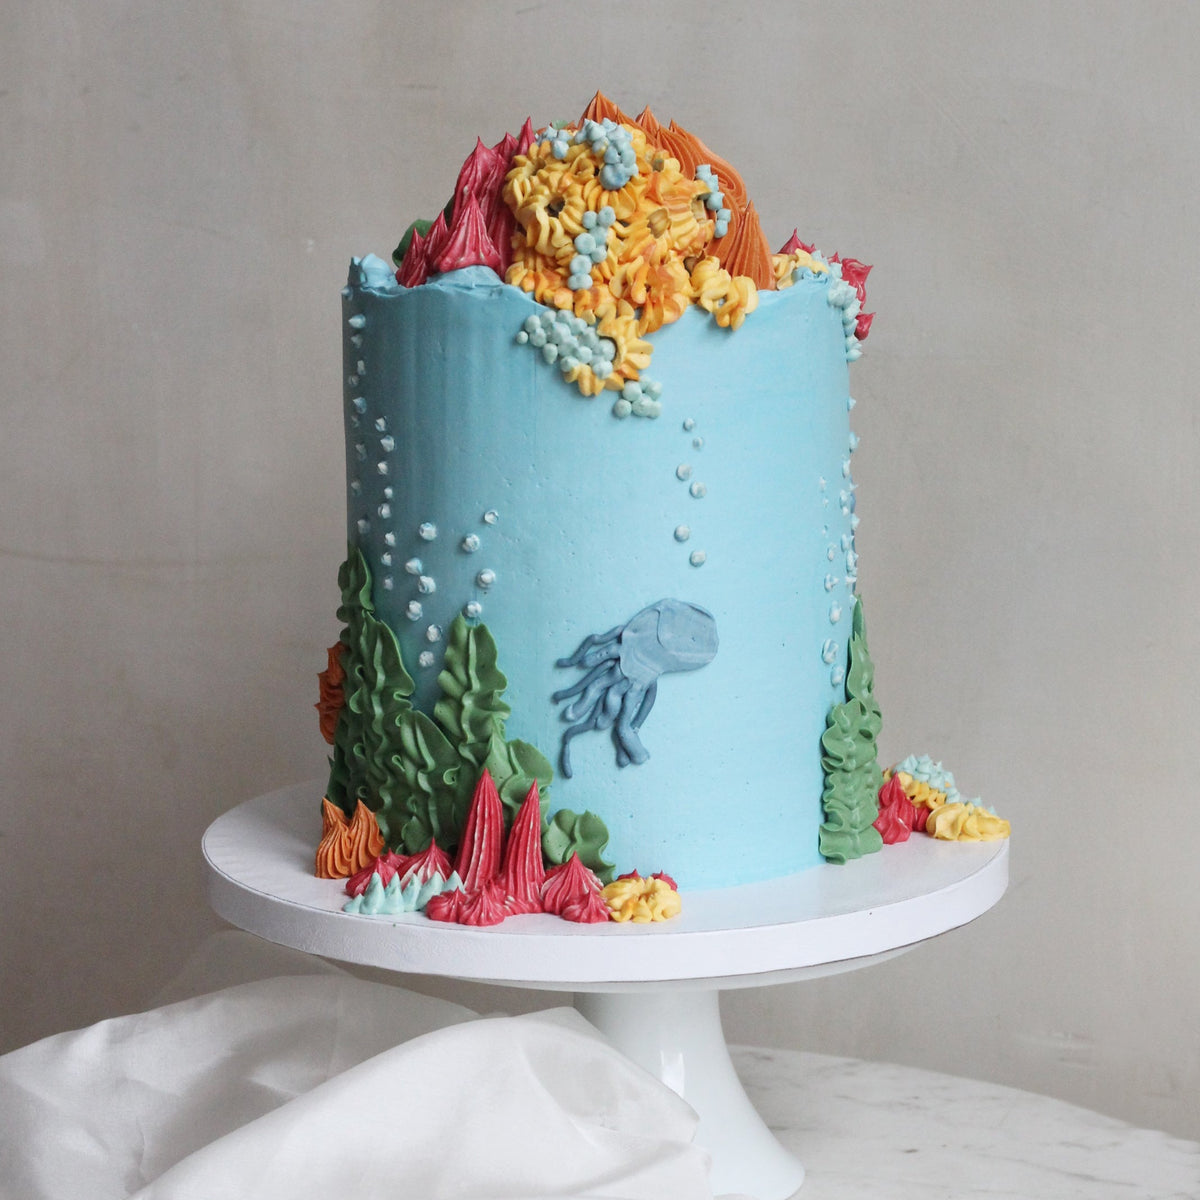 Underwater-inspired cake for ocean lovers.